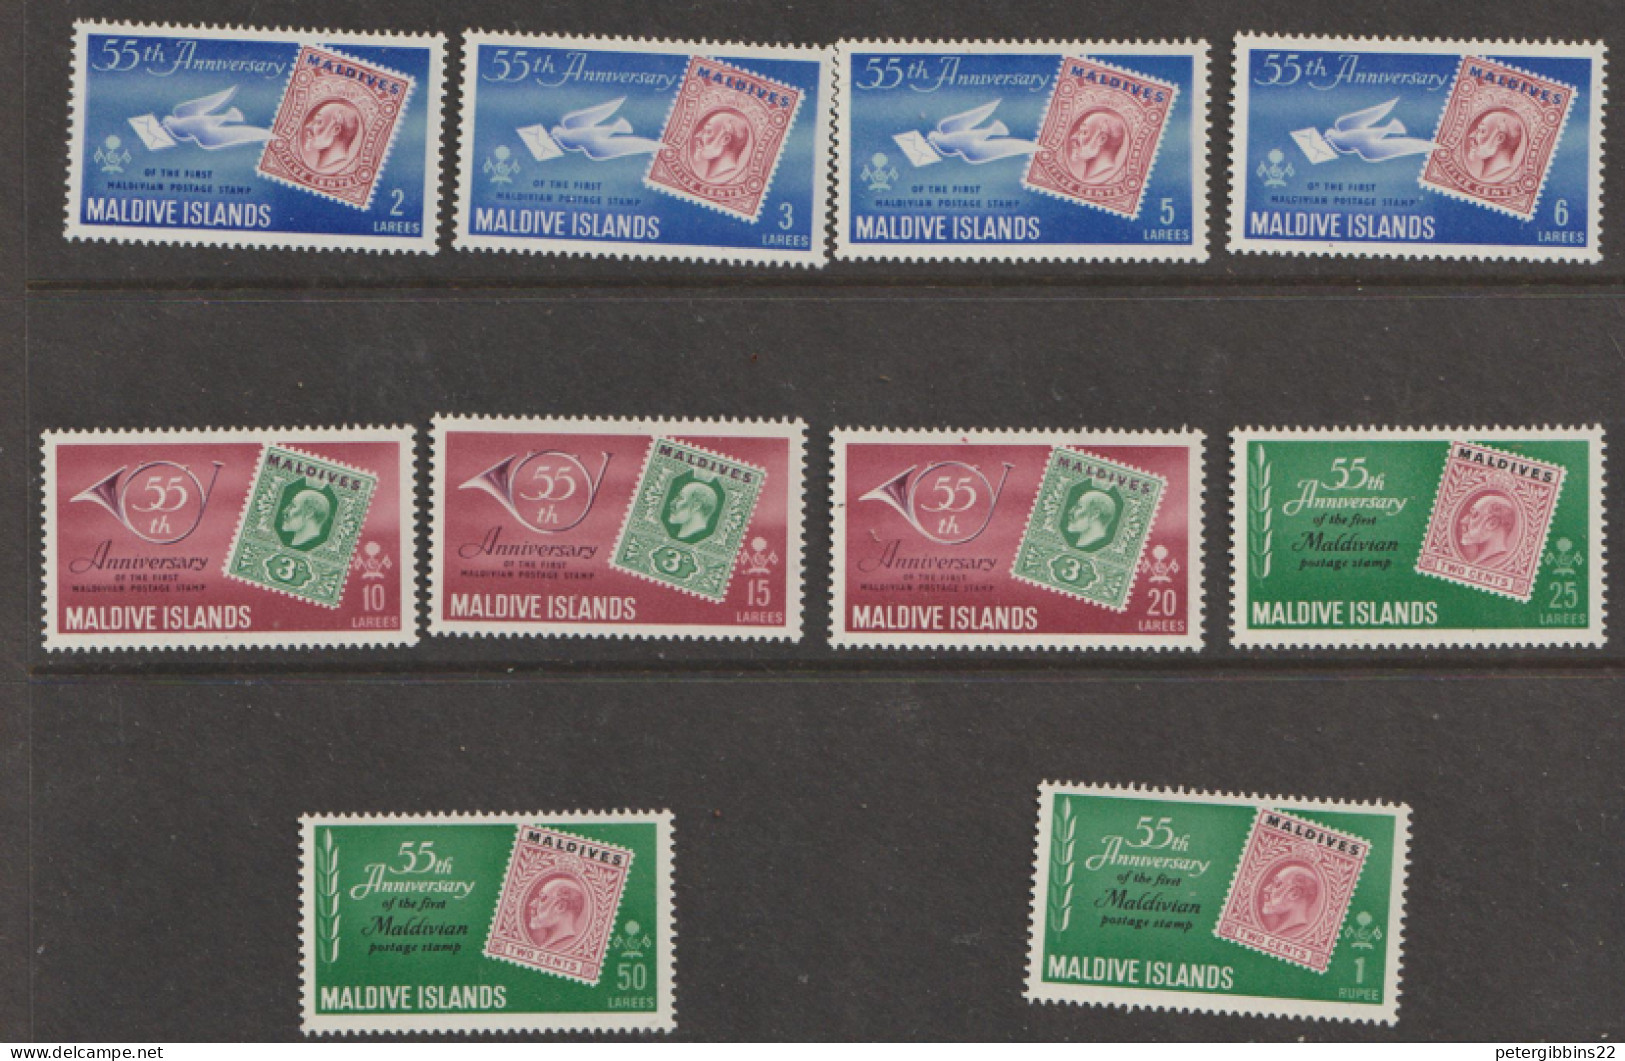 Maldives  1961  SG  78-9  Anniversary Maldivian Postage Stamp   Lightly Mounted Mint - Maldive (...-1965)